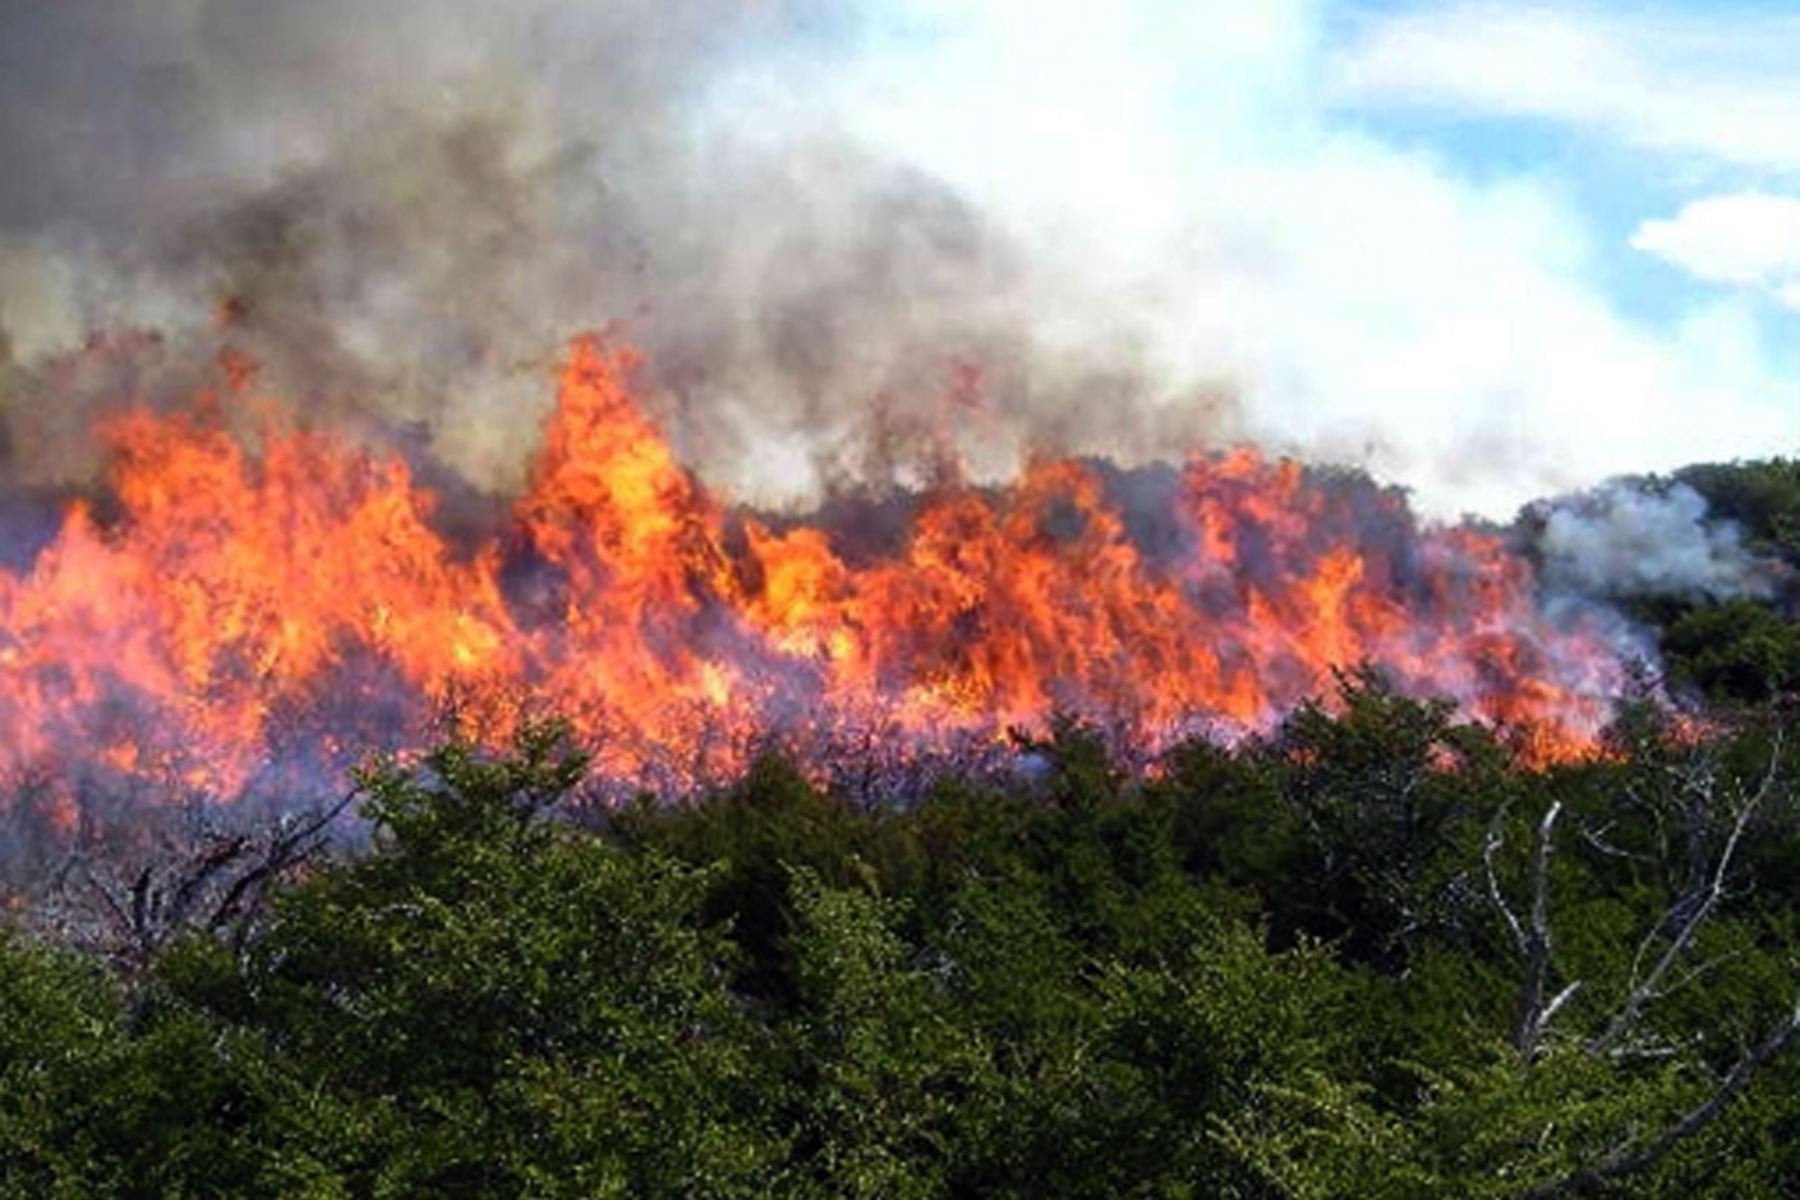 Los incendios forestales registrados durante el 2020 ocasionaron la pérdida de más de 10,391 hectáreas de cobertura vegetal, 16,301 hectáreas de cultivos agrícolas y 11,645 cabezas de ganado. Foto: ANDINA/Difusión